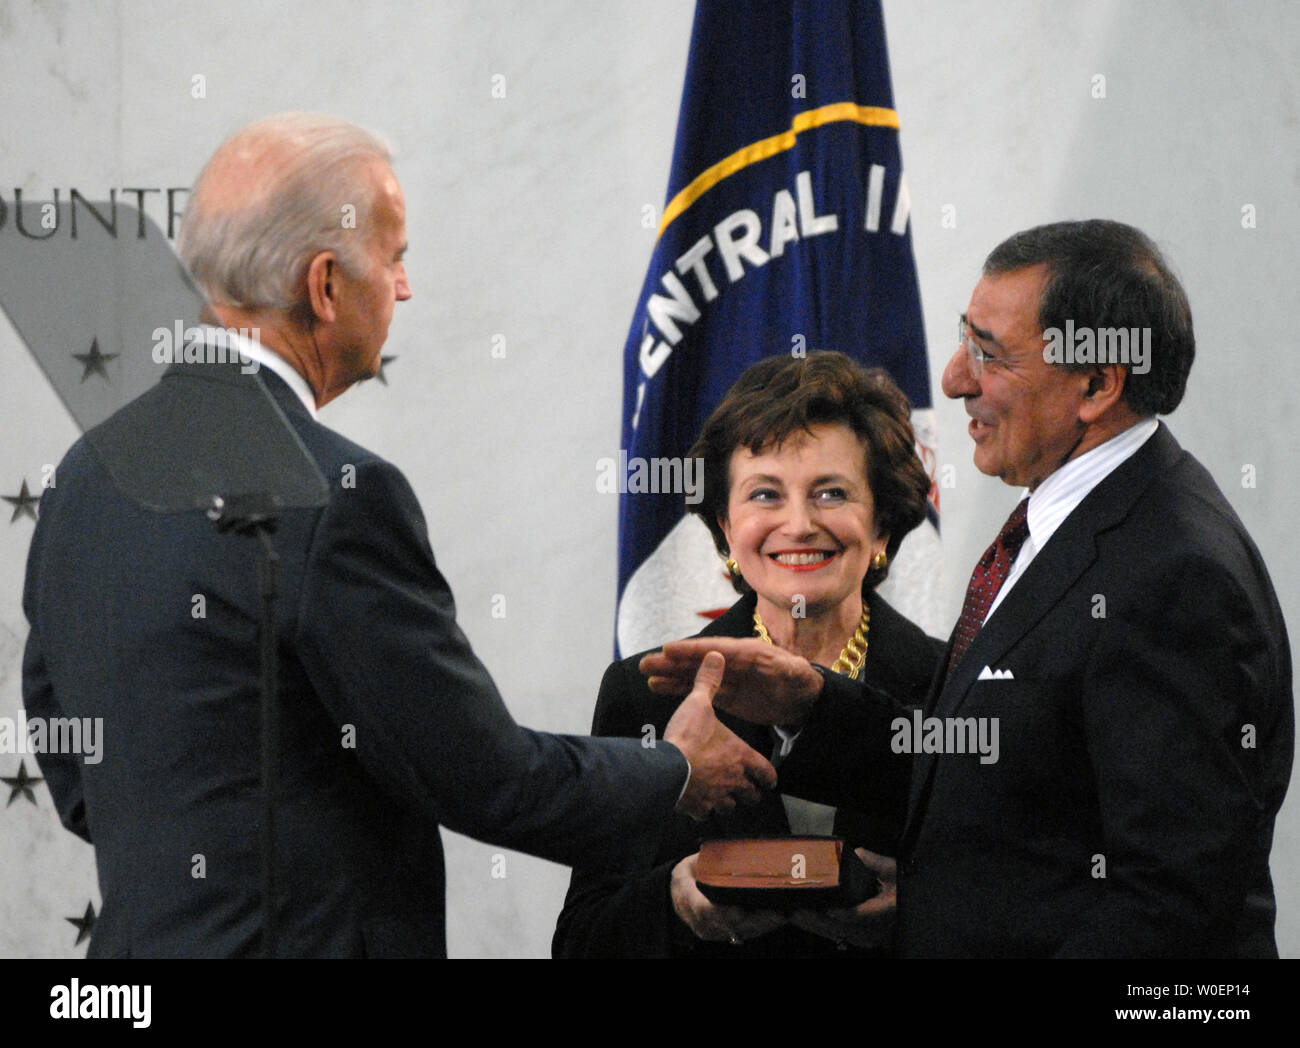 Us-Vizepräsident Joe Biden (L) schüttelt Hände mit Leon Panetta (R) nach Biden ihm schwor, als der Direktor der Central Intelligence Agency (CIA), während die Panetta Frau Sylvia hält die Bibel, im CIA-Hauptquartier in McLean, Virginia, am 19. Februar 2009. (UPI Foto/Alexis C Glenn) Stockfoto